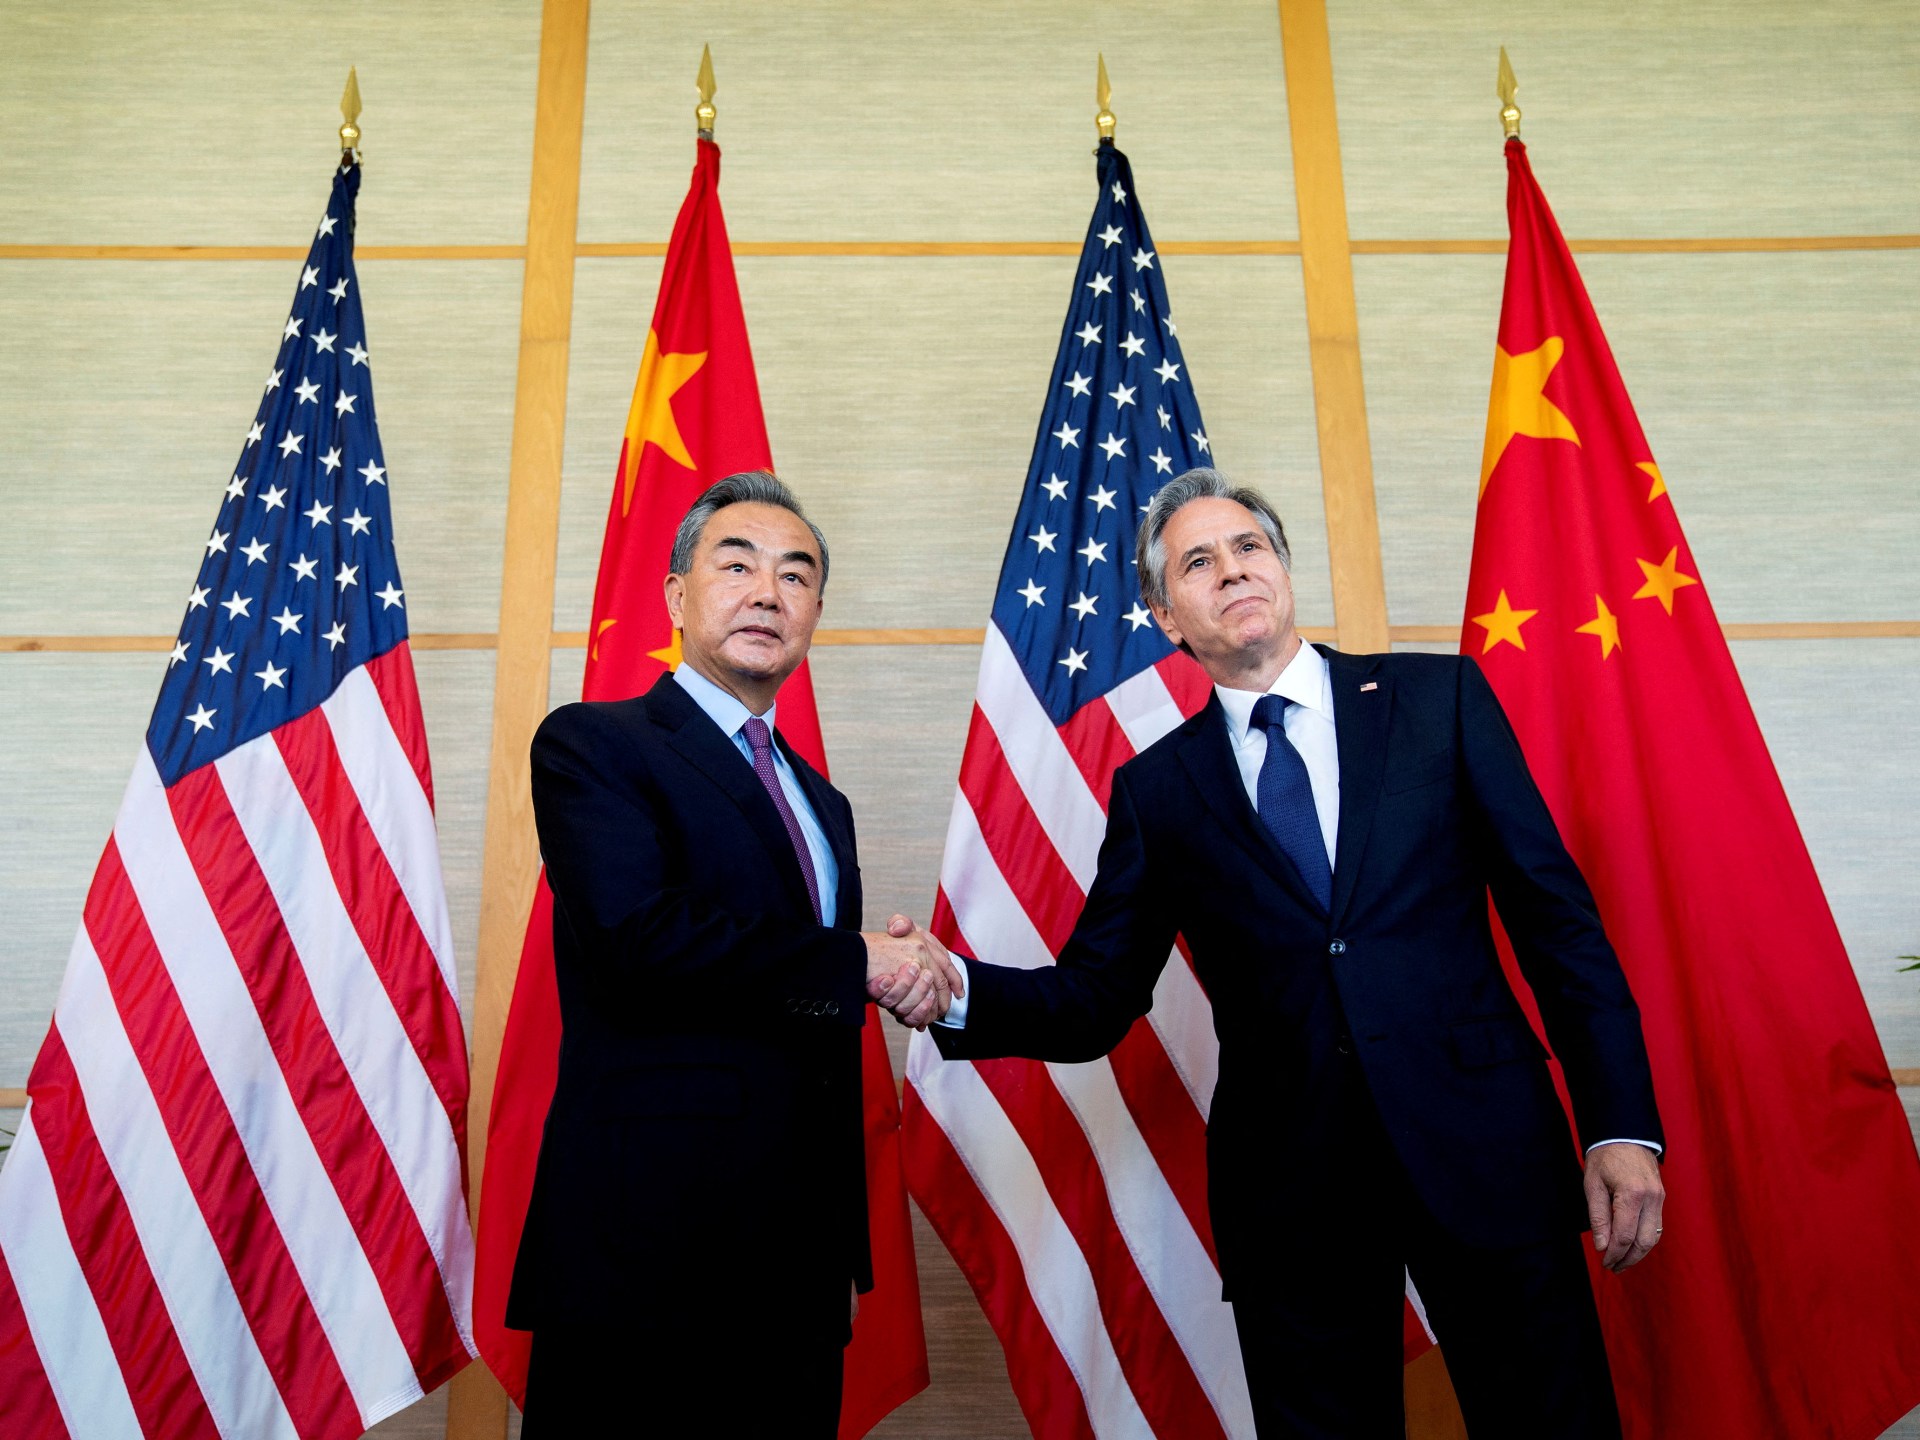 وزير الخارجية الصيني يزور واشنطن ويبحث الحرب على غزة | أخبار – البوكس نيوز